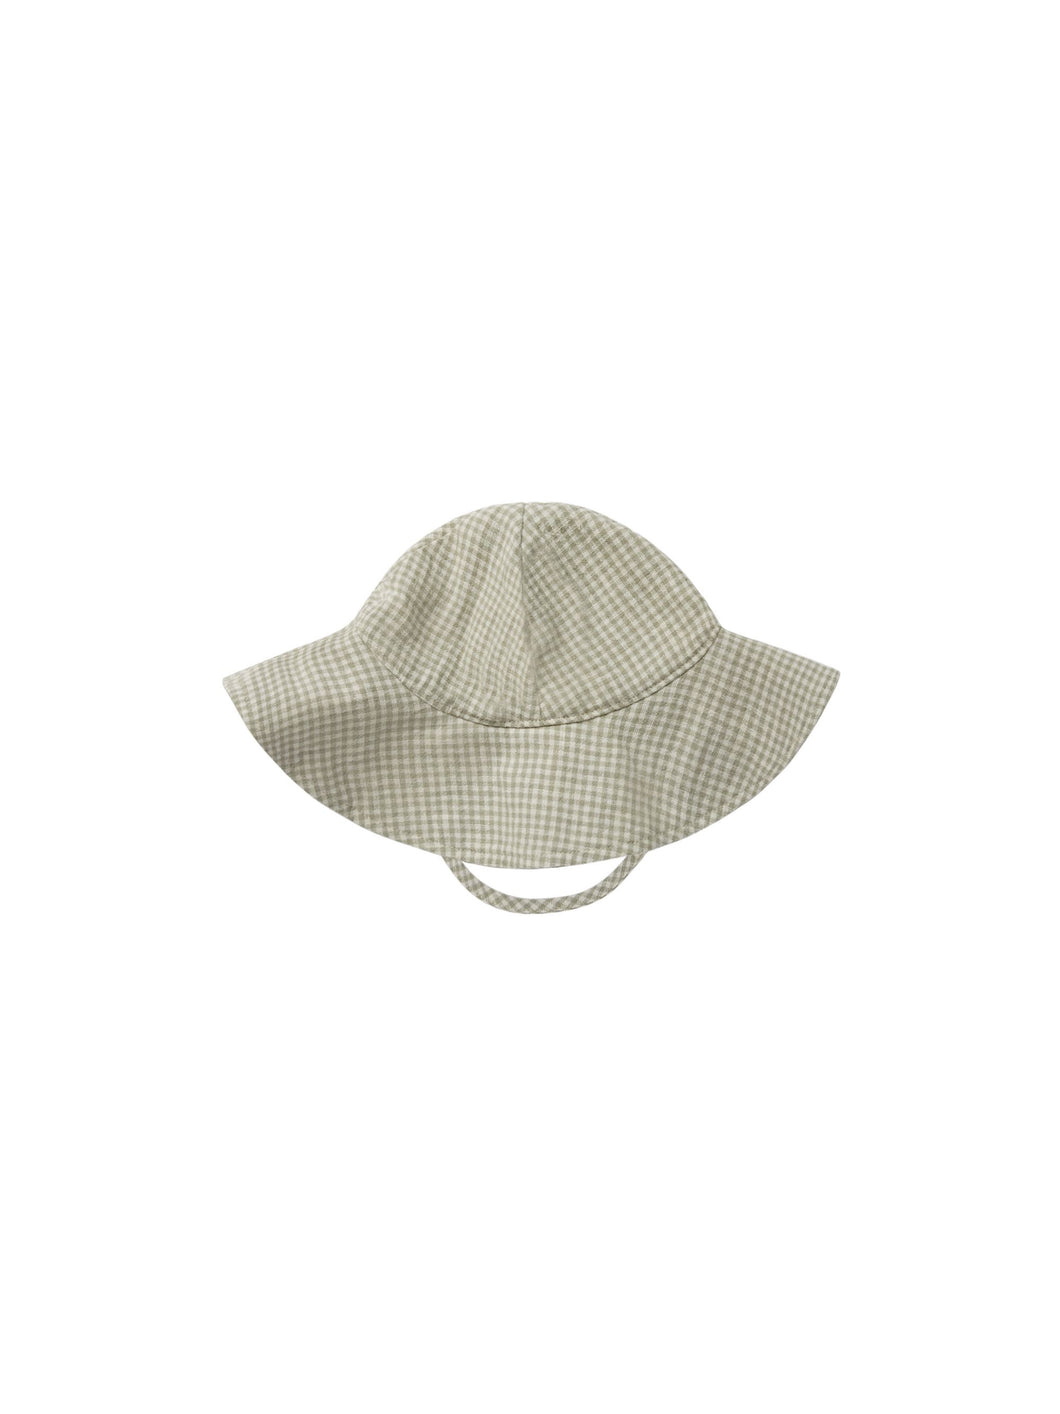 Floppy Sun Hat | Sage Gingham